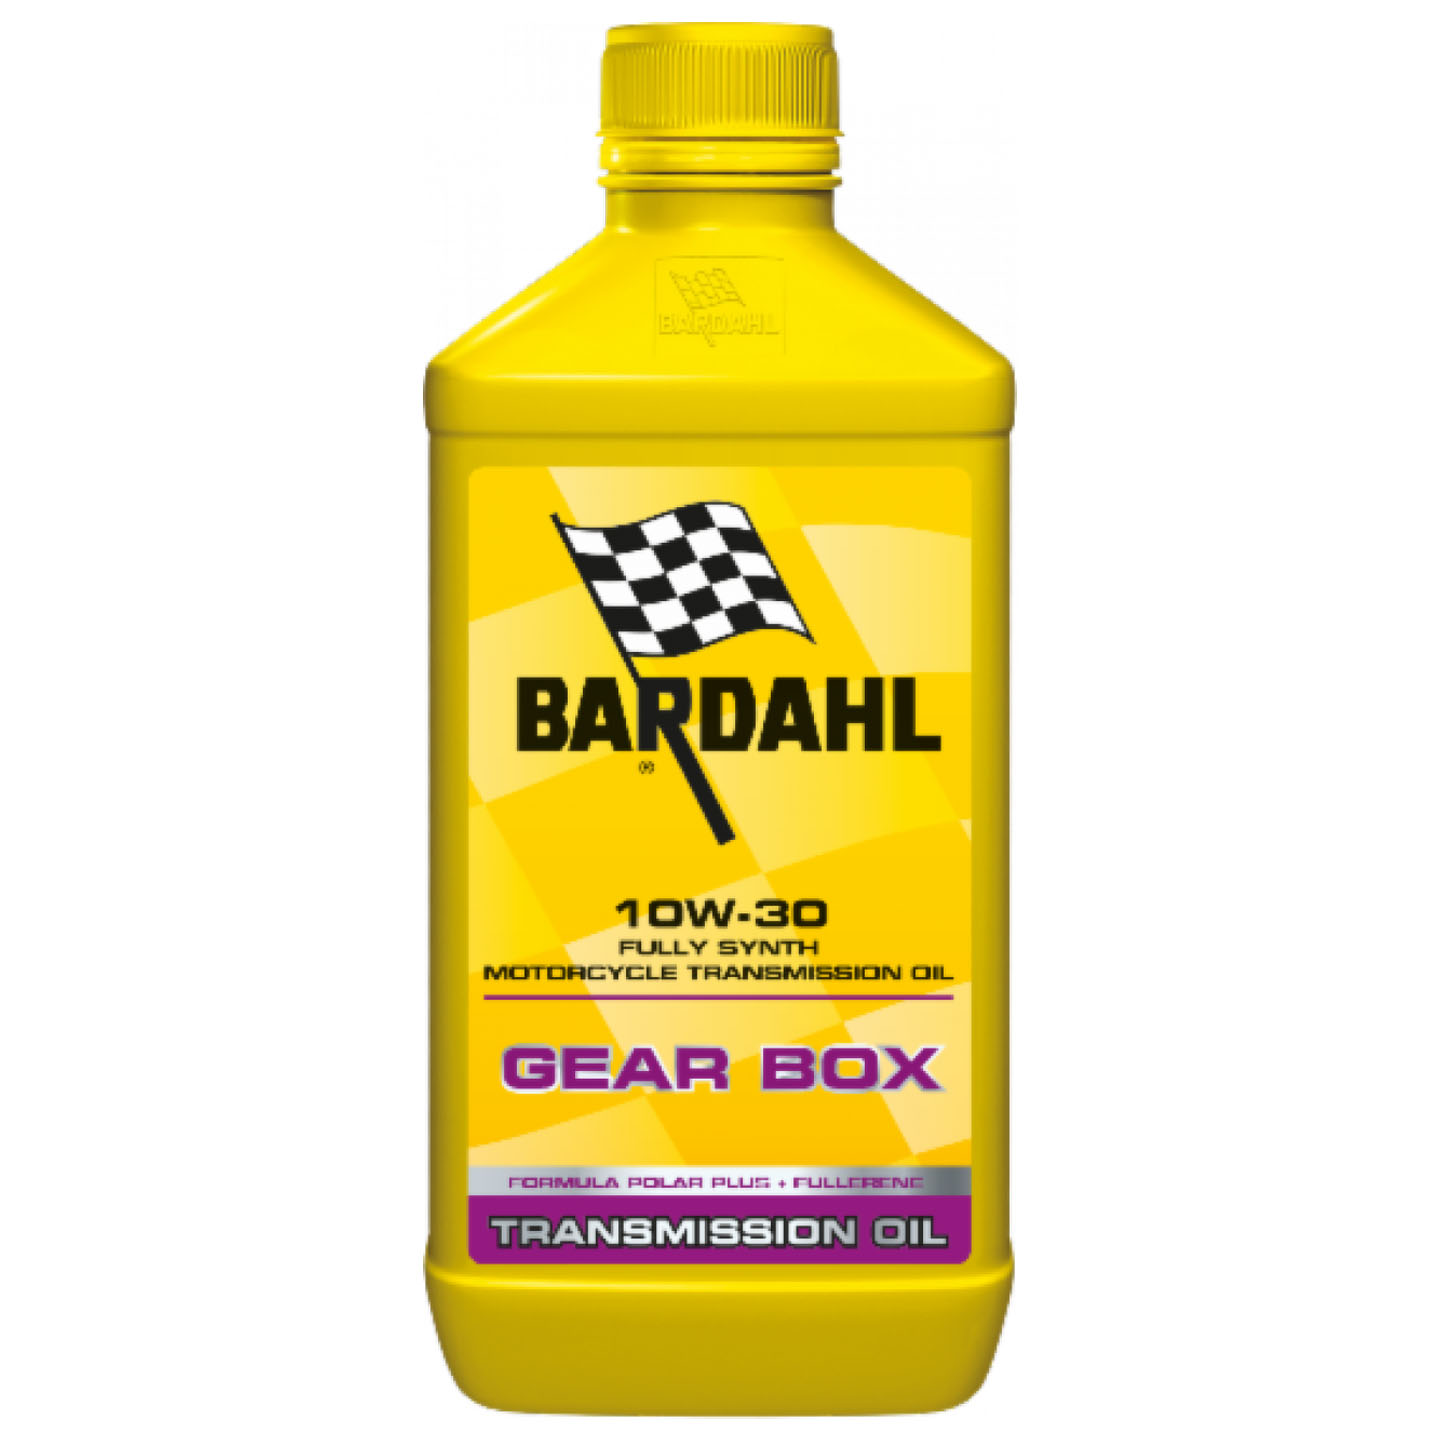 BARDAHL GEARBOX 10W30